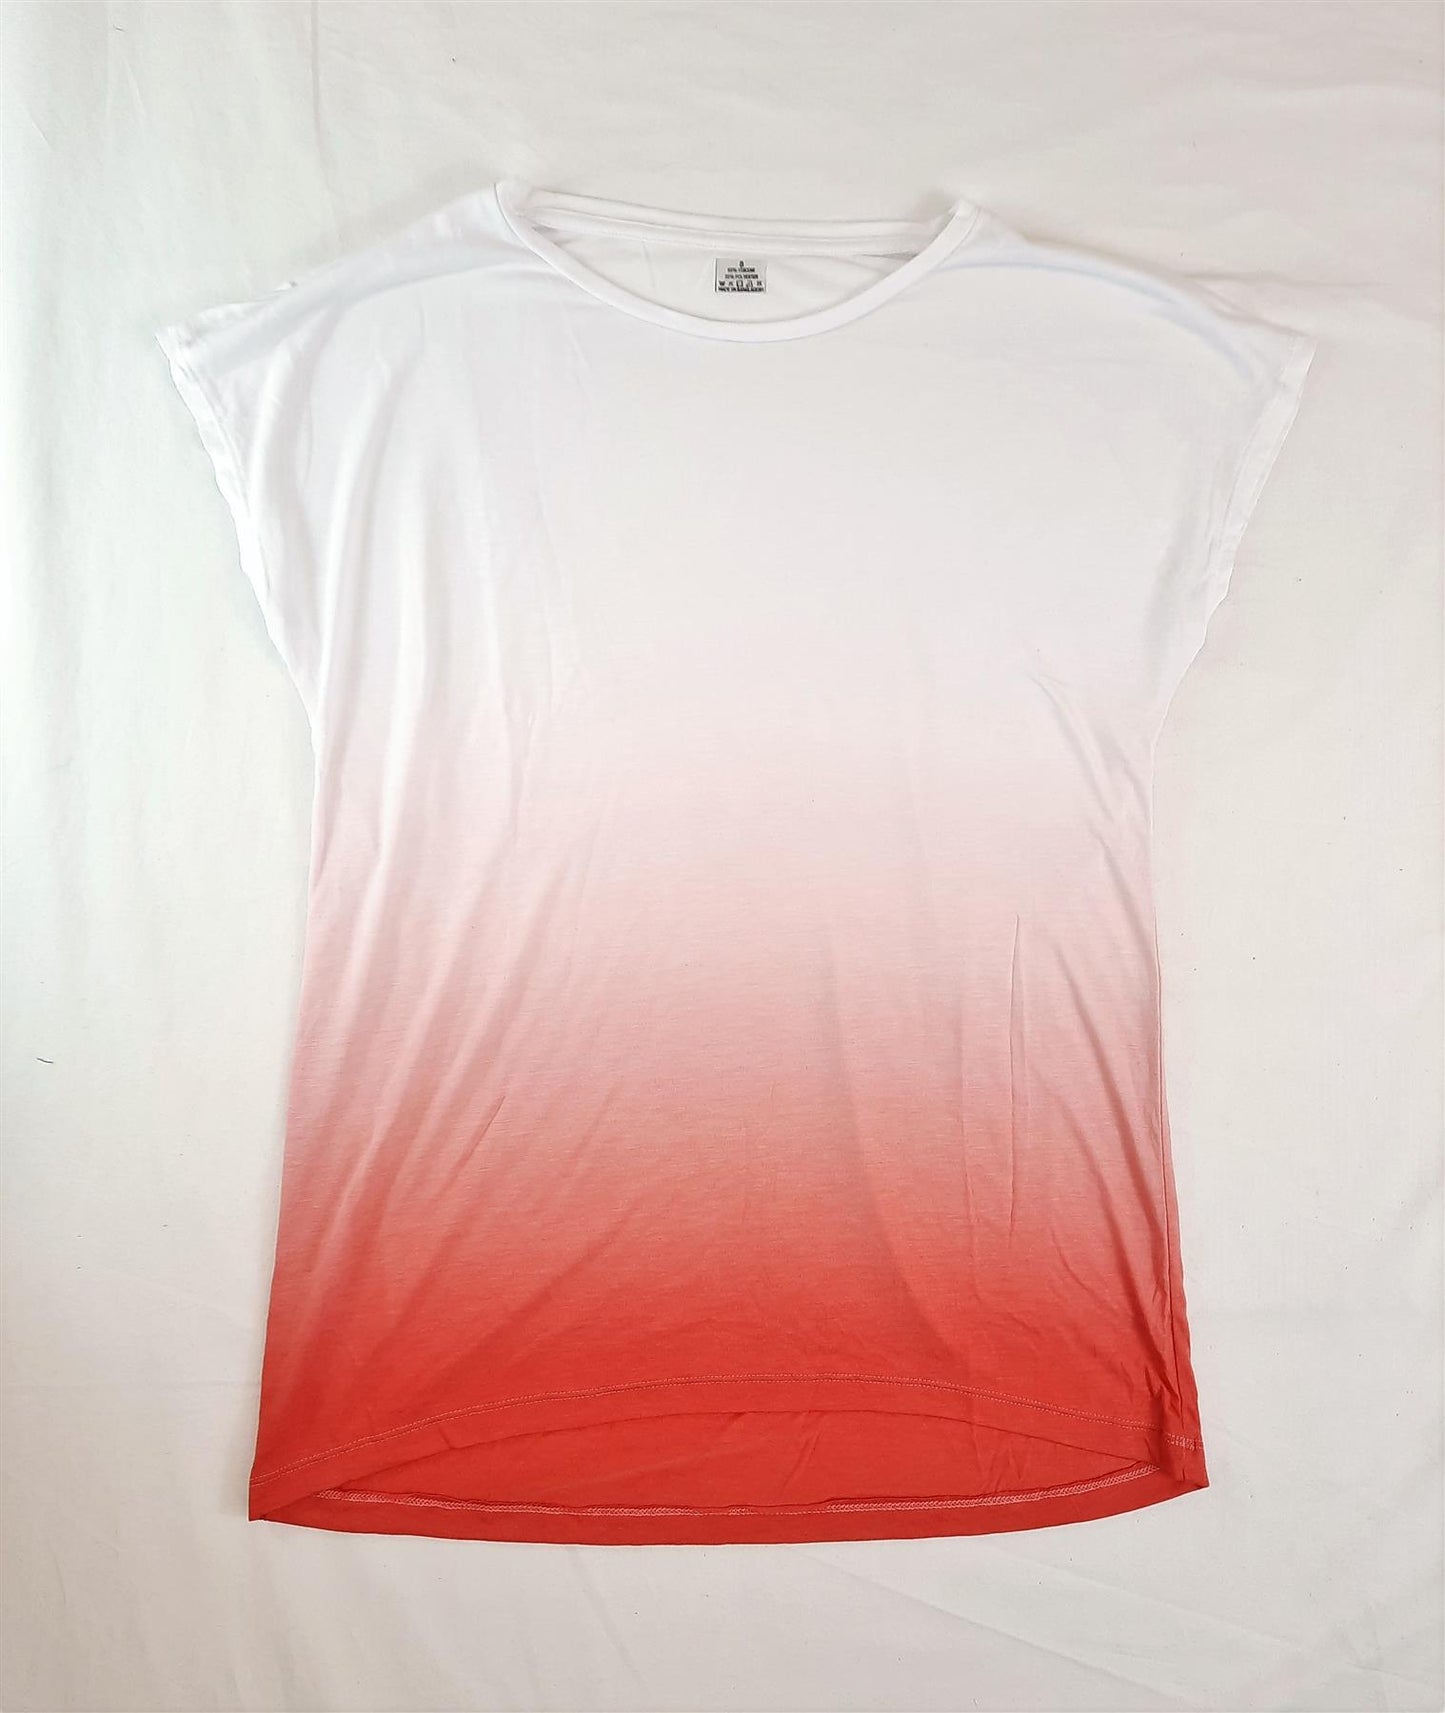 Women's Summer T-Shirt Top Soft Relaxed Fit Cap Sleeve High Street Brand New